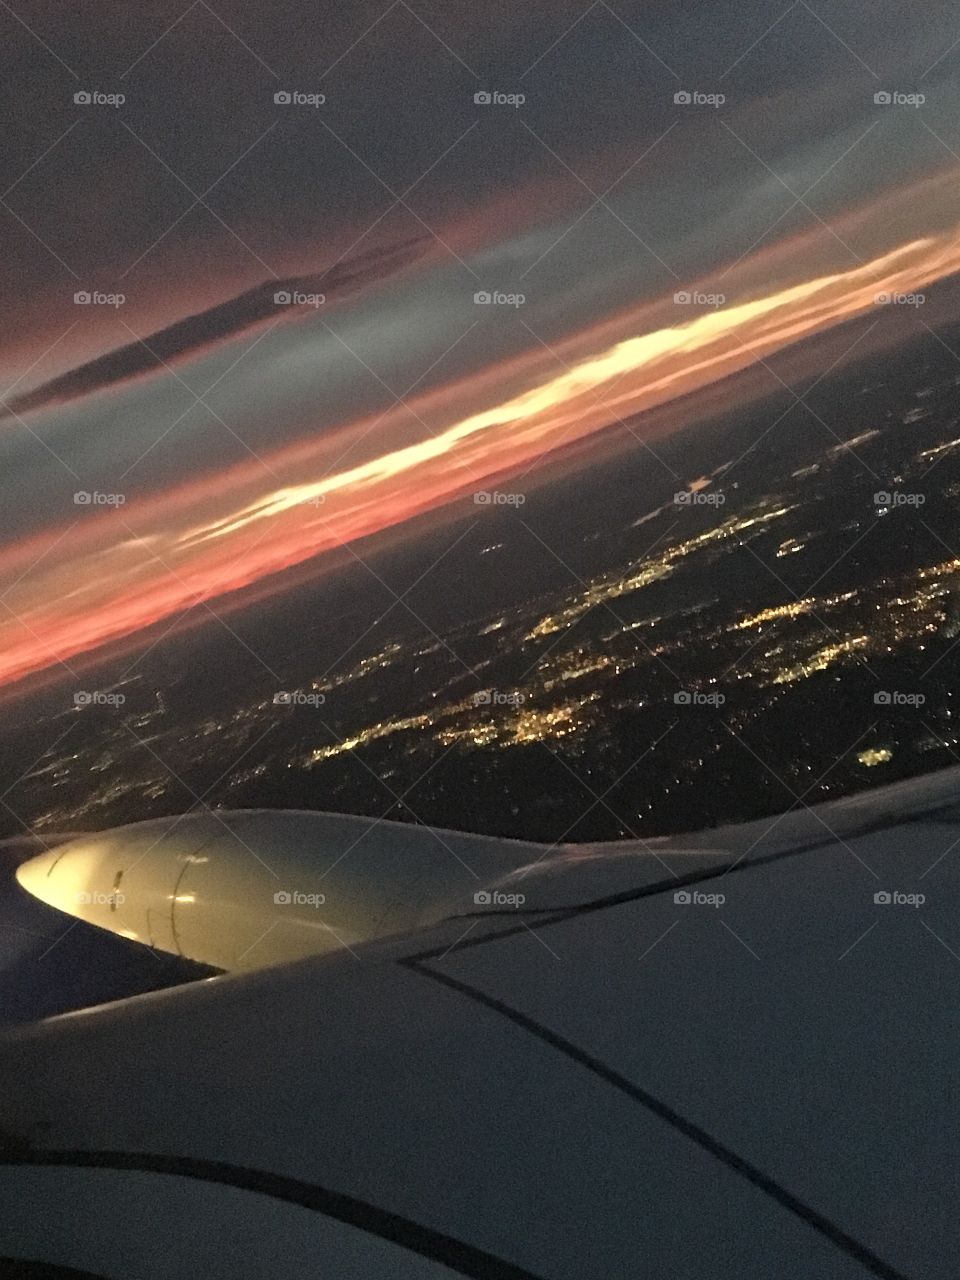 Departing Columbus Oh at sunset